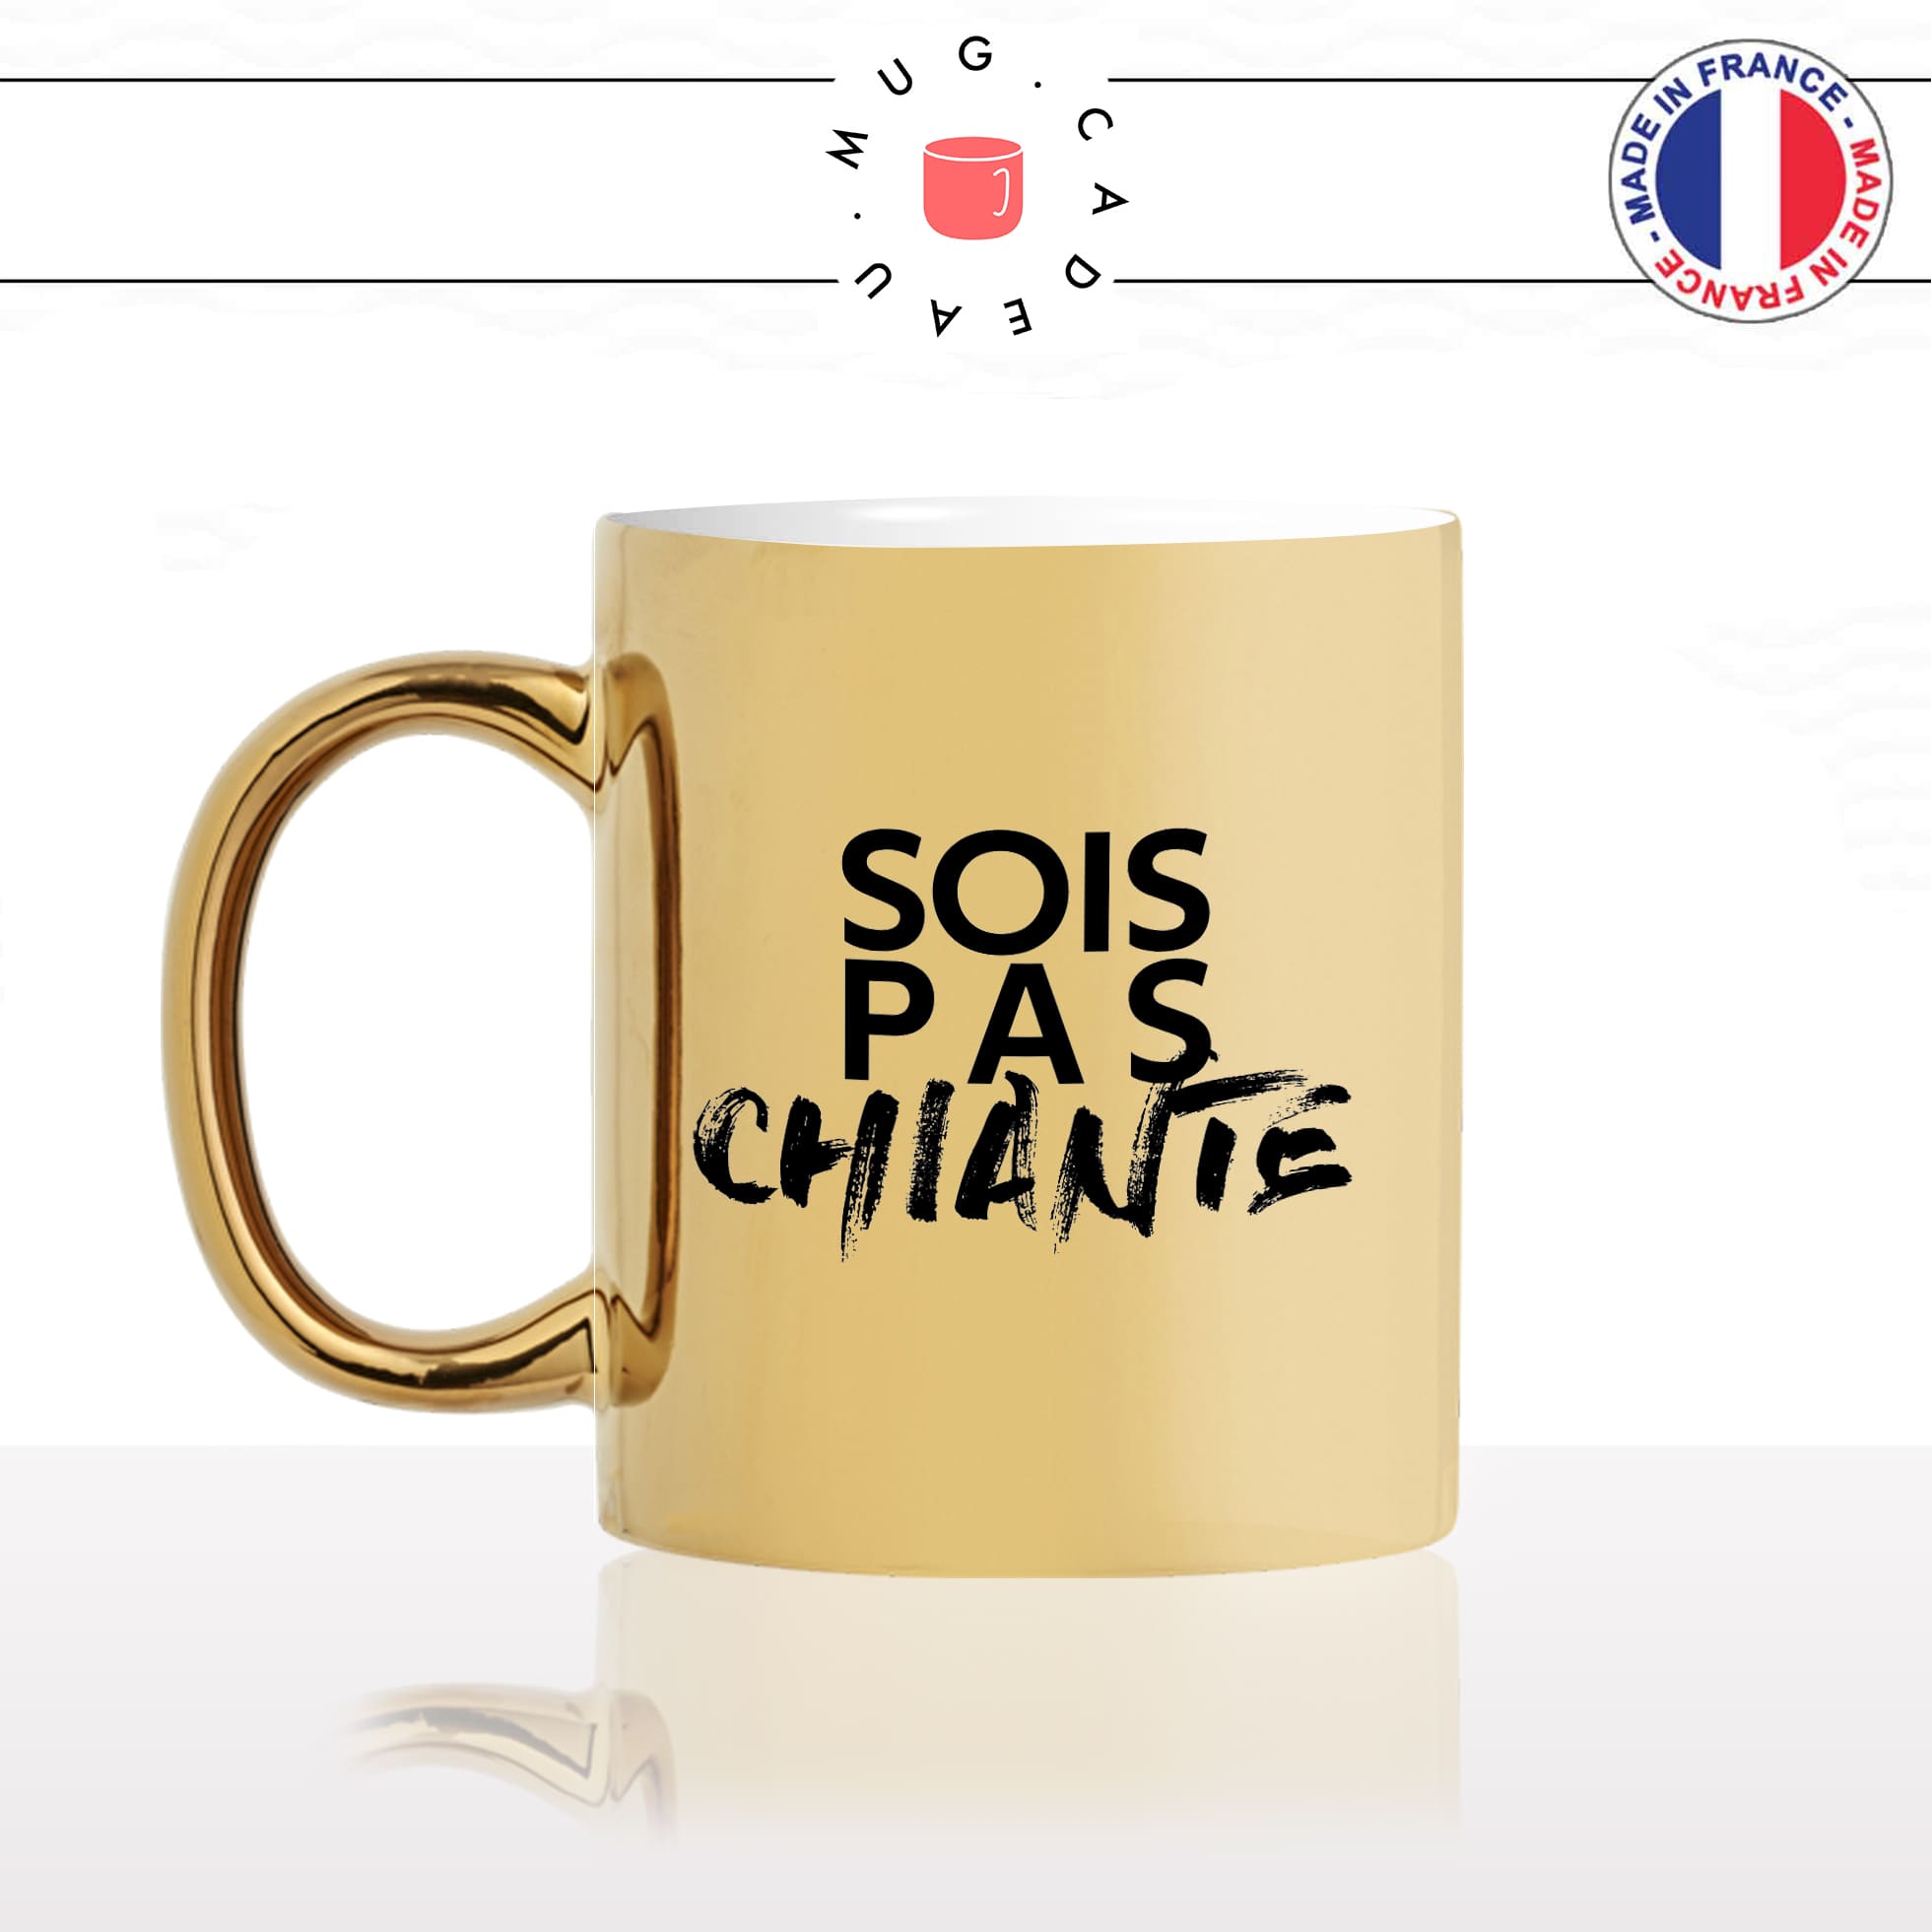 mug-tasse-or-doré-gold-sois-pas-chiante-femme-penible-collegue-couple-humour-fun-idée-cadeau-originale-cool